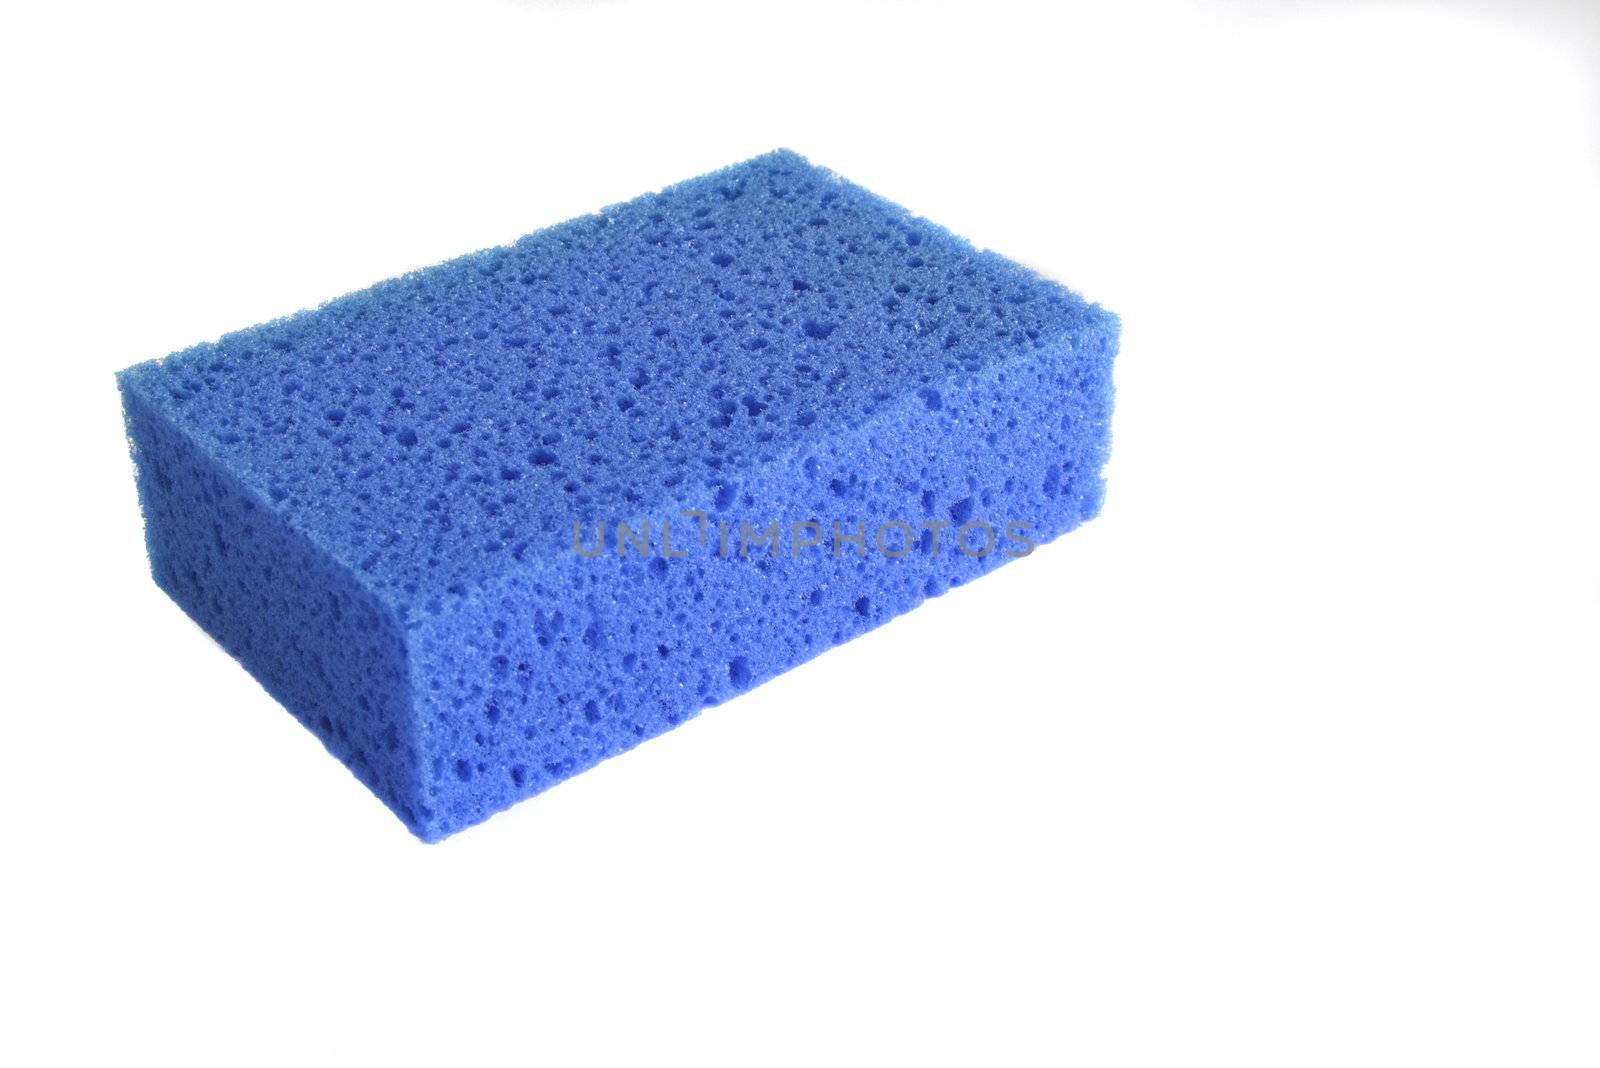 Blue sponge by Iko